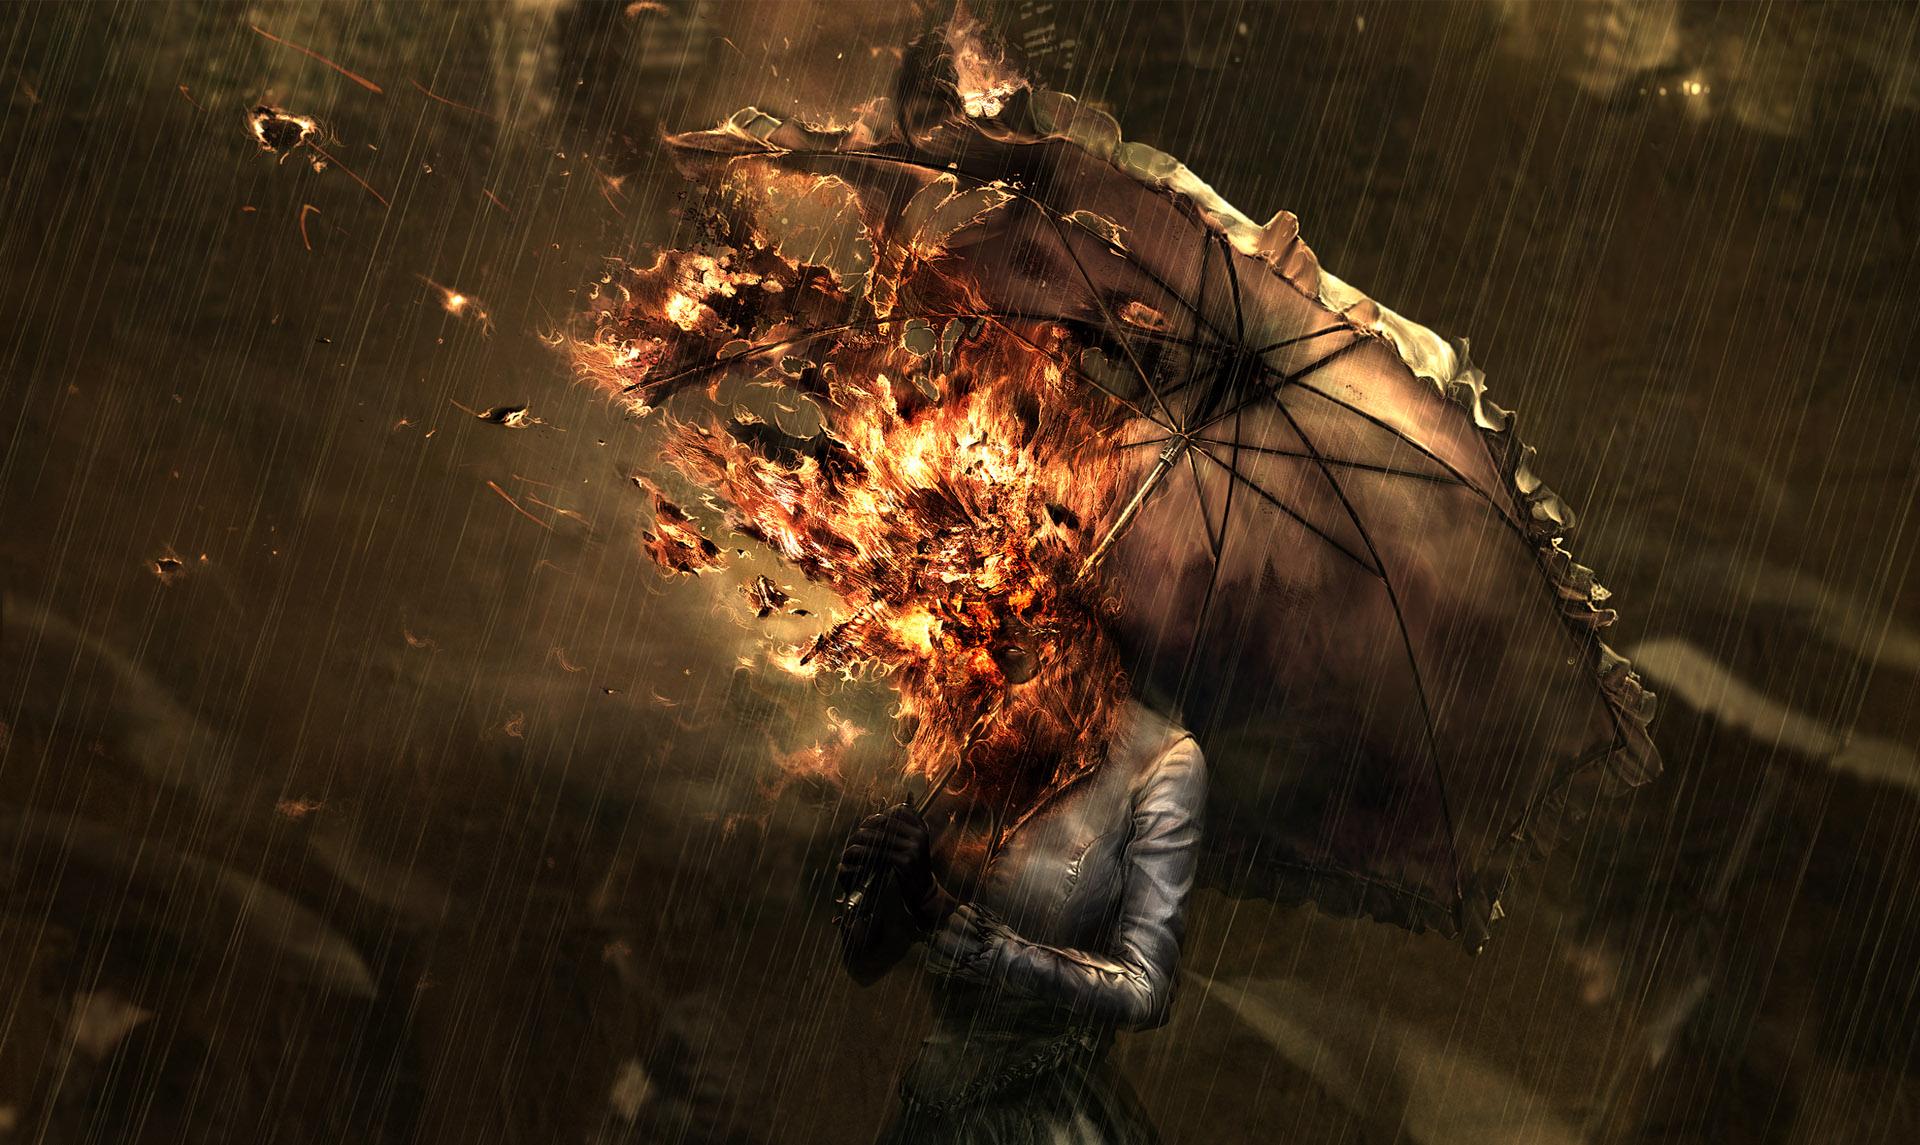 women, rain, fire, umbrellas - desktop wallpaper